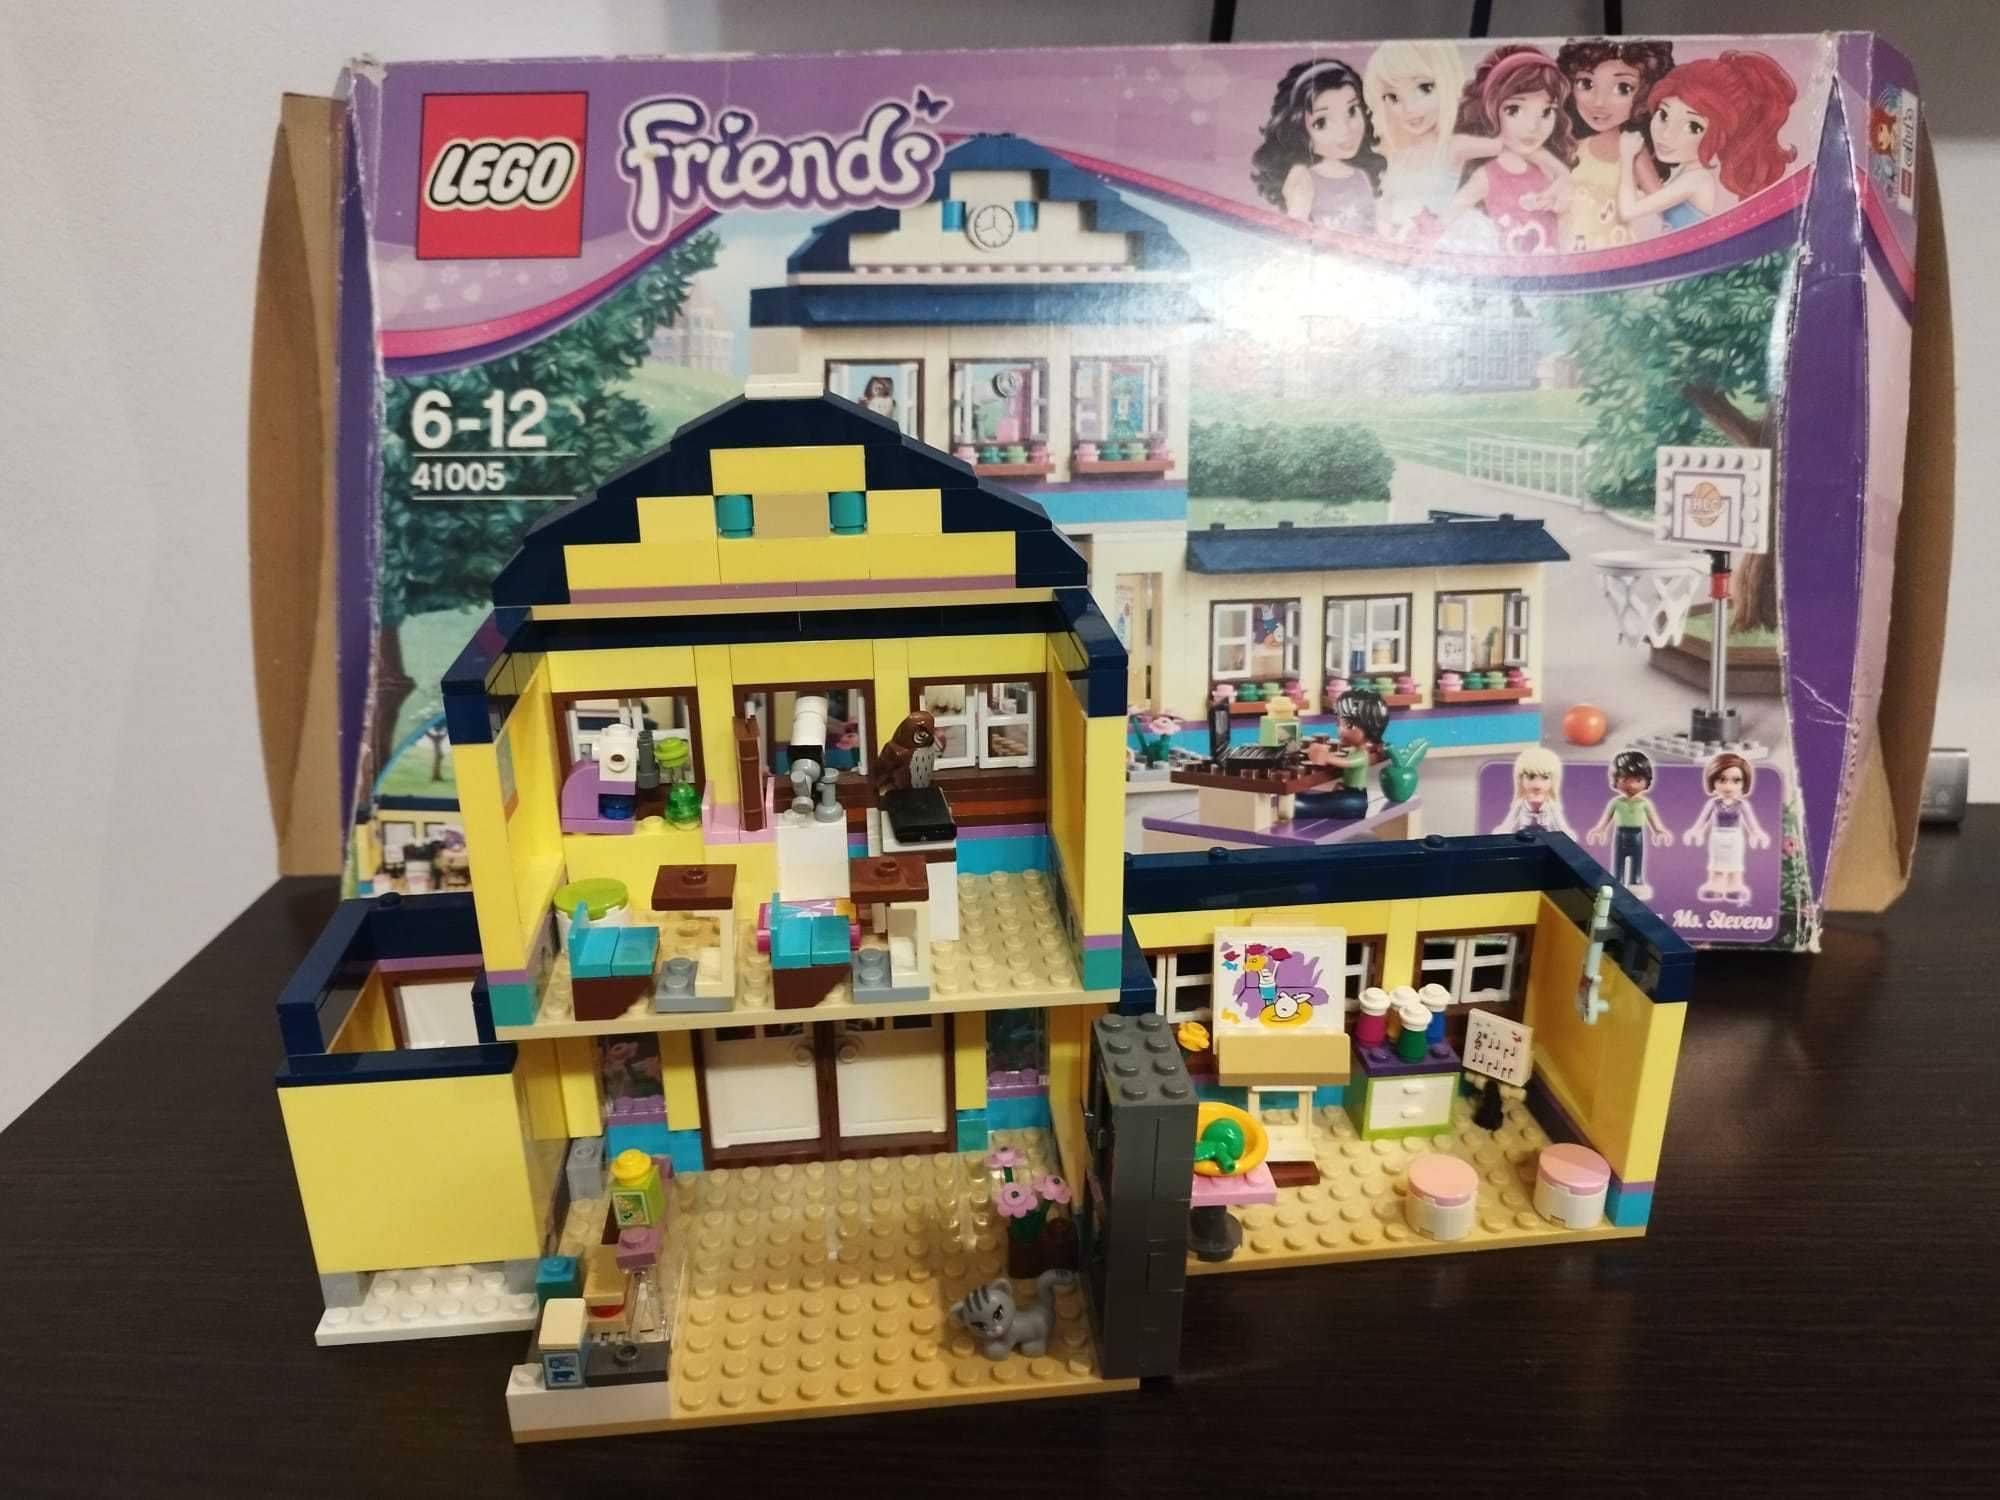 LEGO Friends Liceul Heartlake 41005